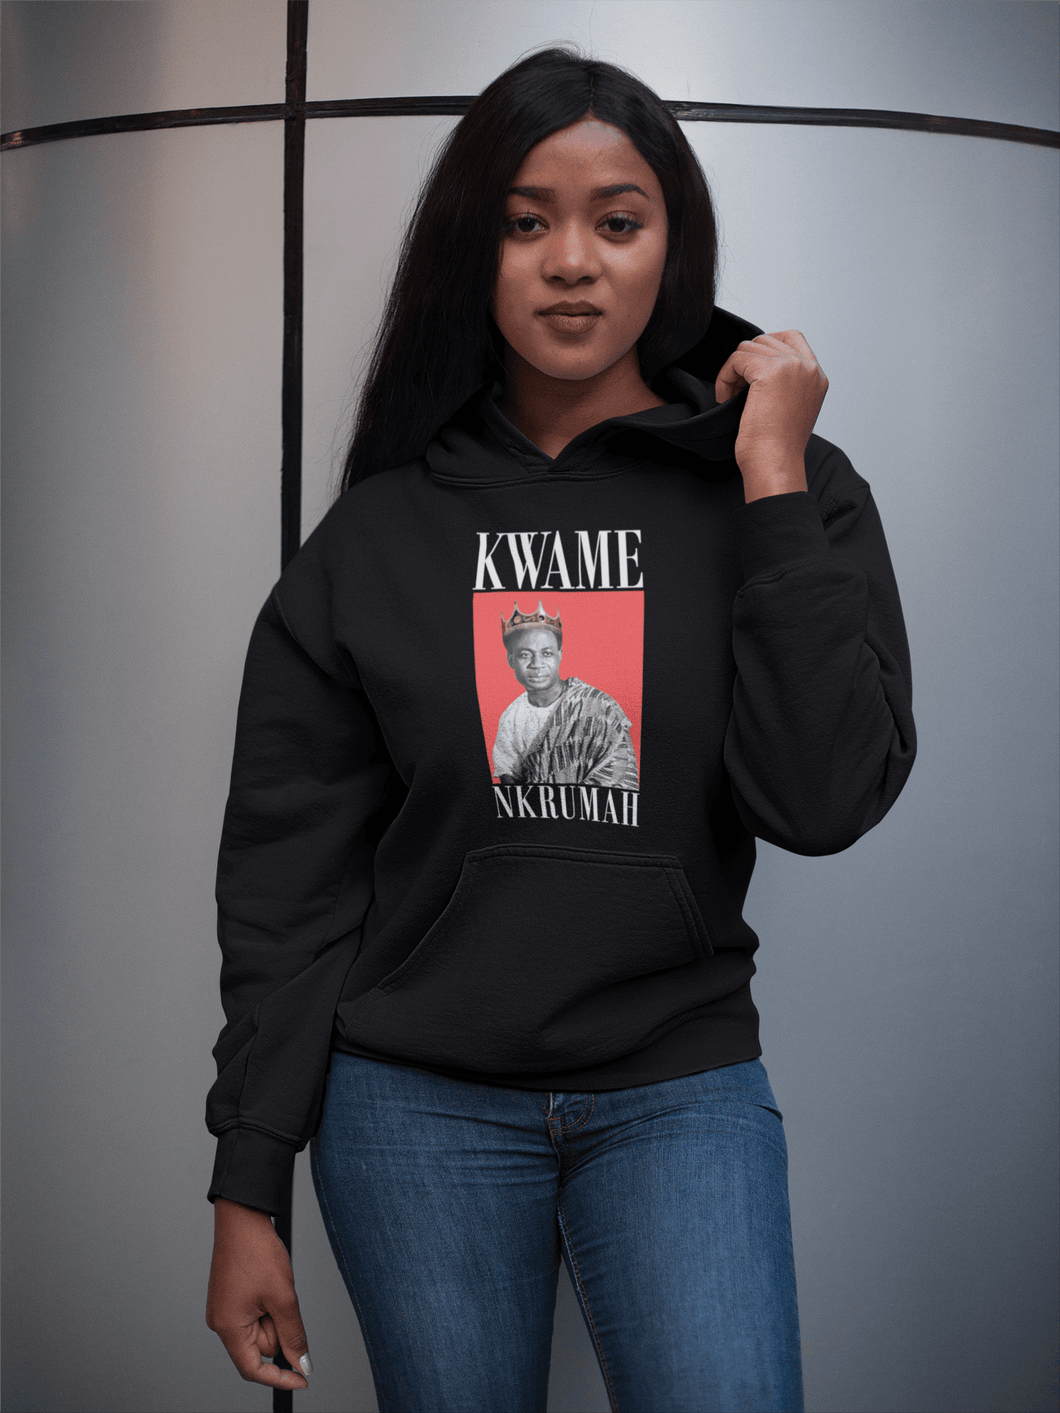 Kwame Nkrumah Women's Hoodie